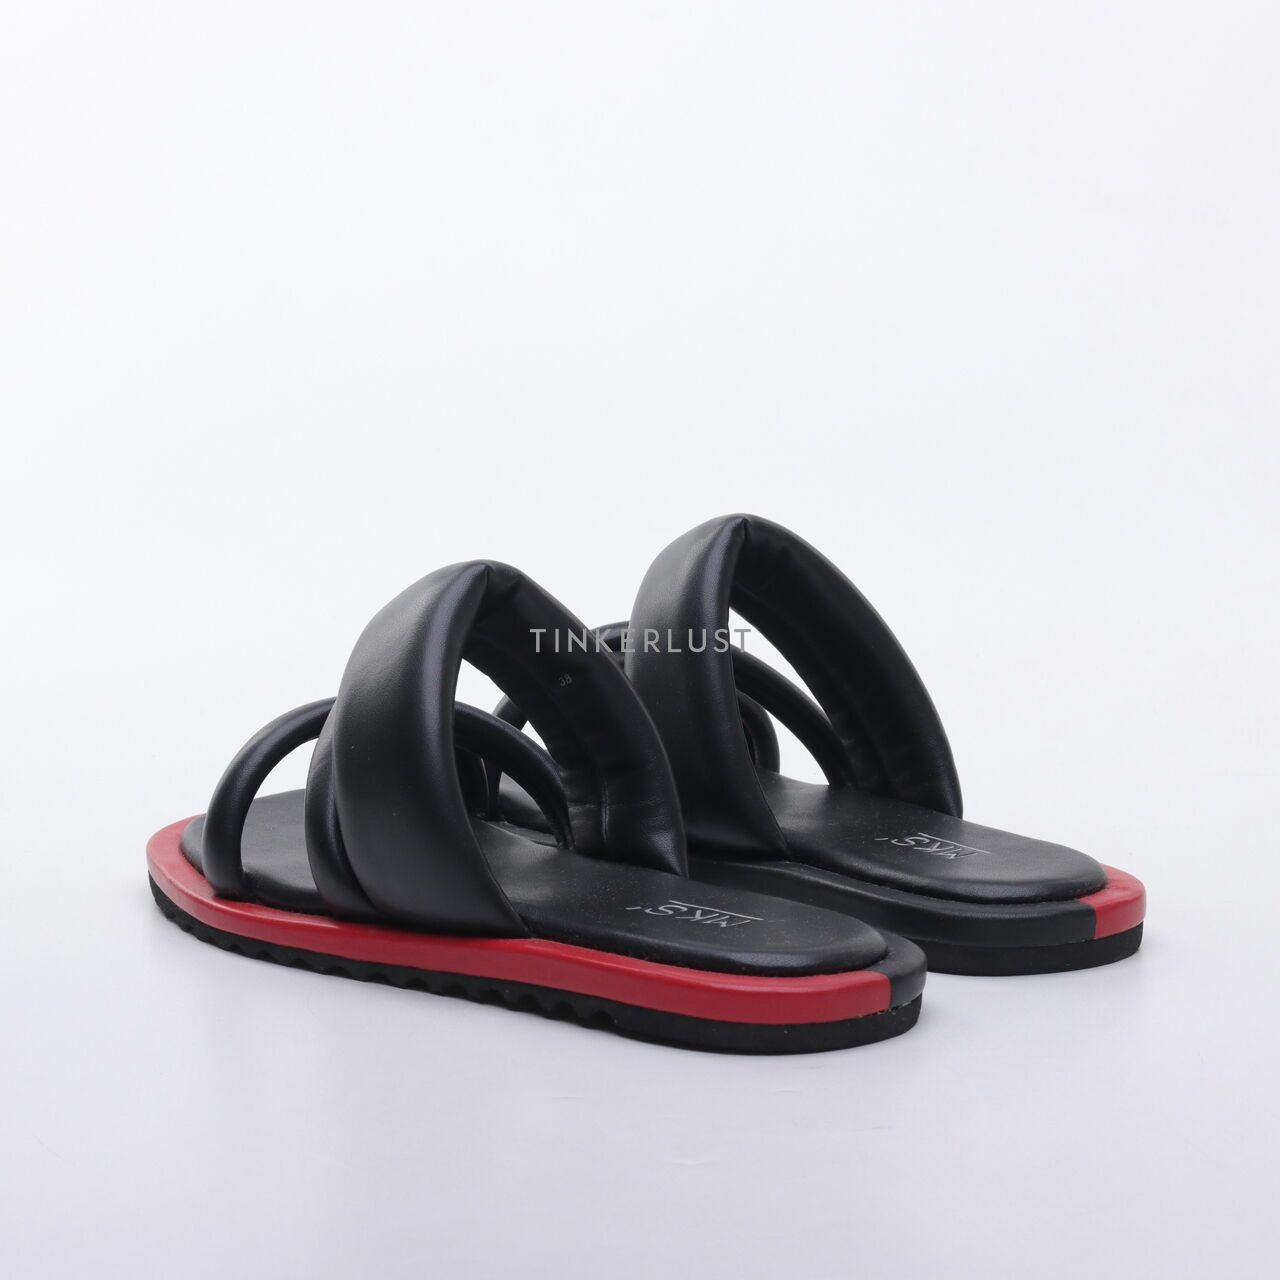 MKS Black & Red Sandals